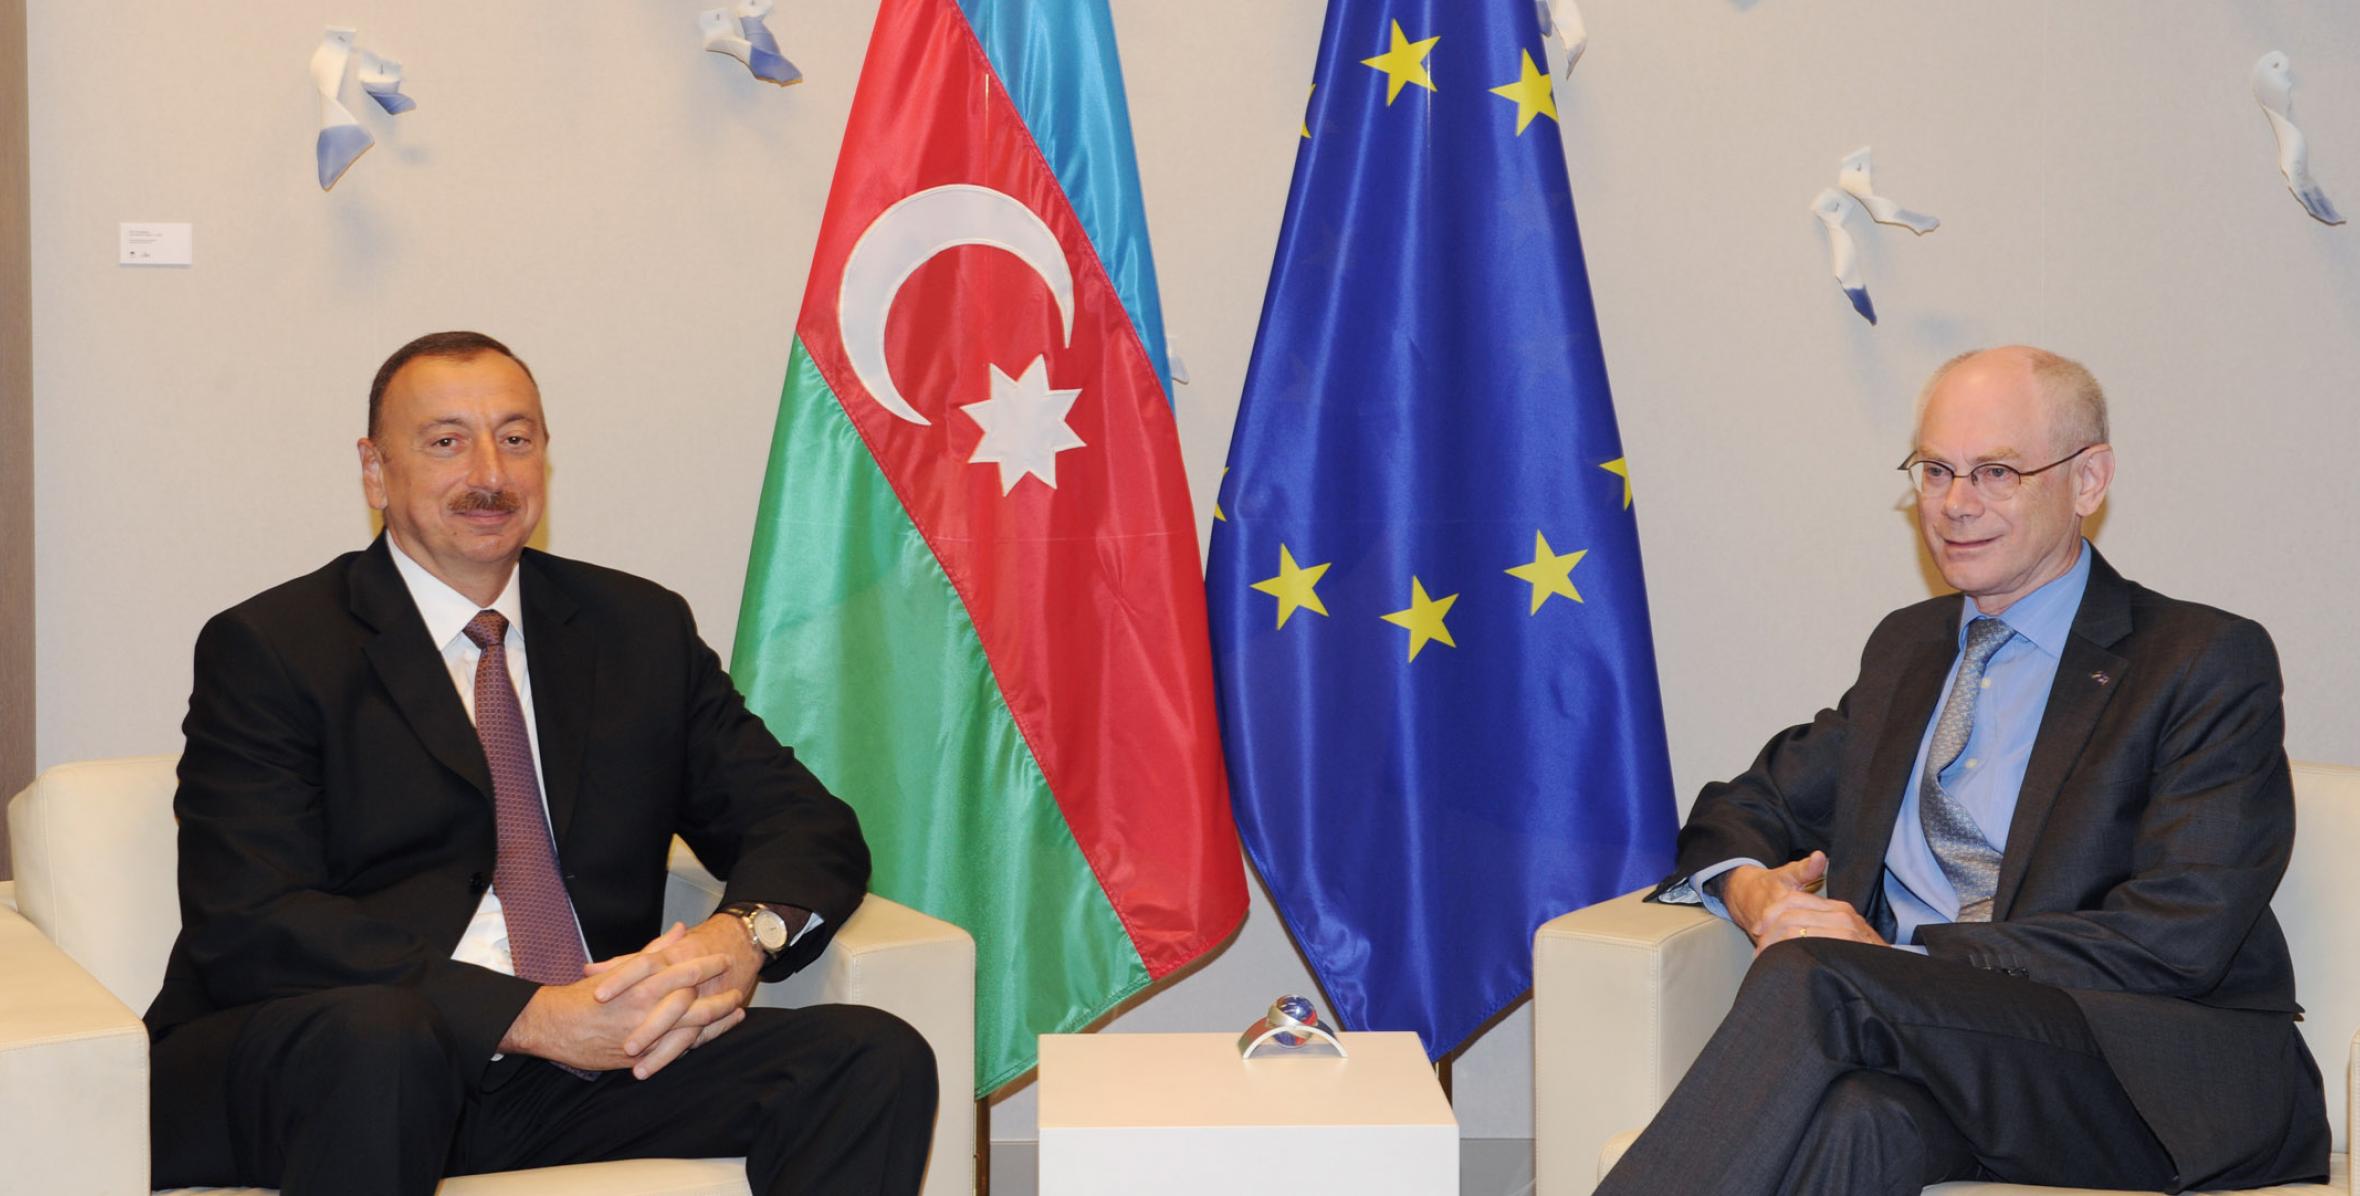 Ilham Aliyev met with the President of the European Council, Herman Van Rompuy